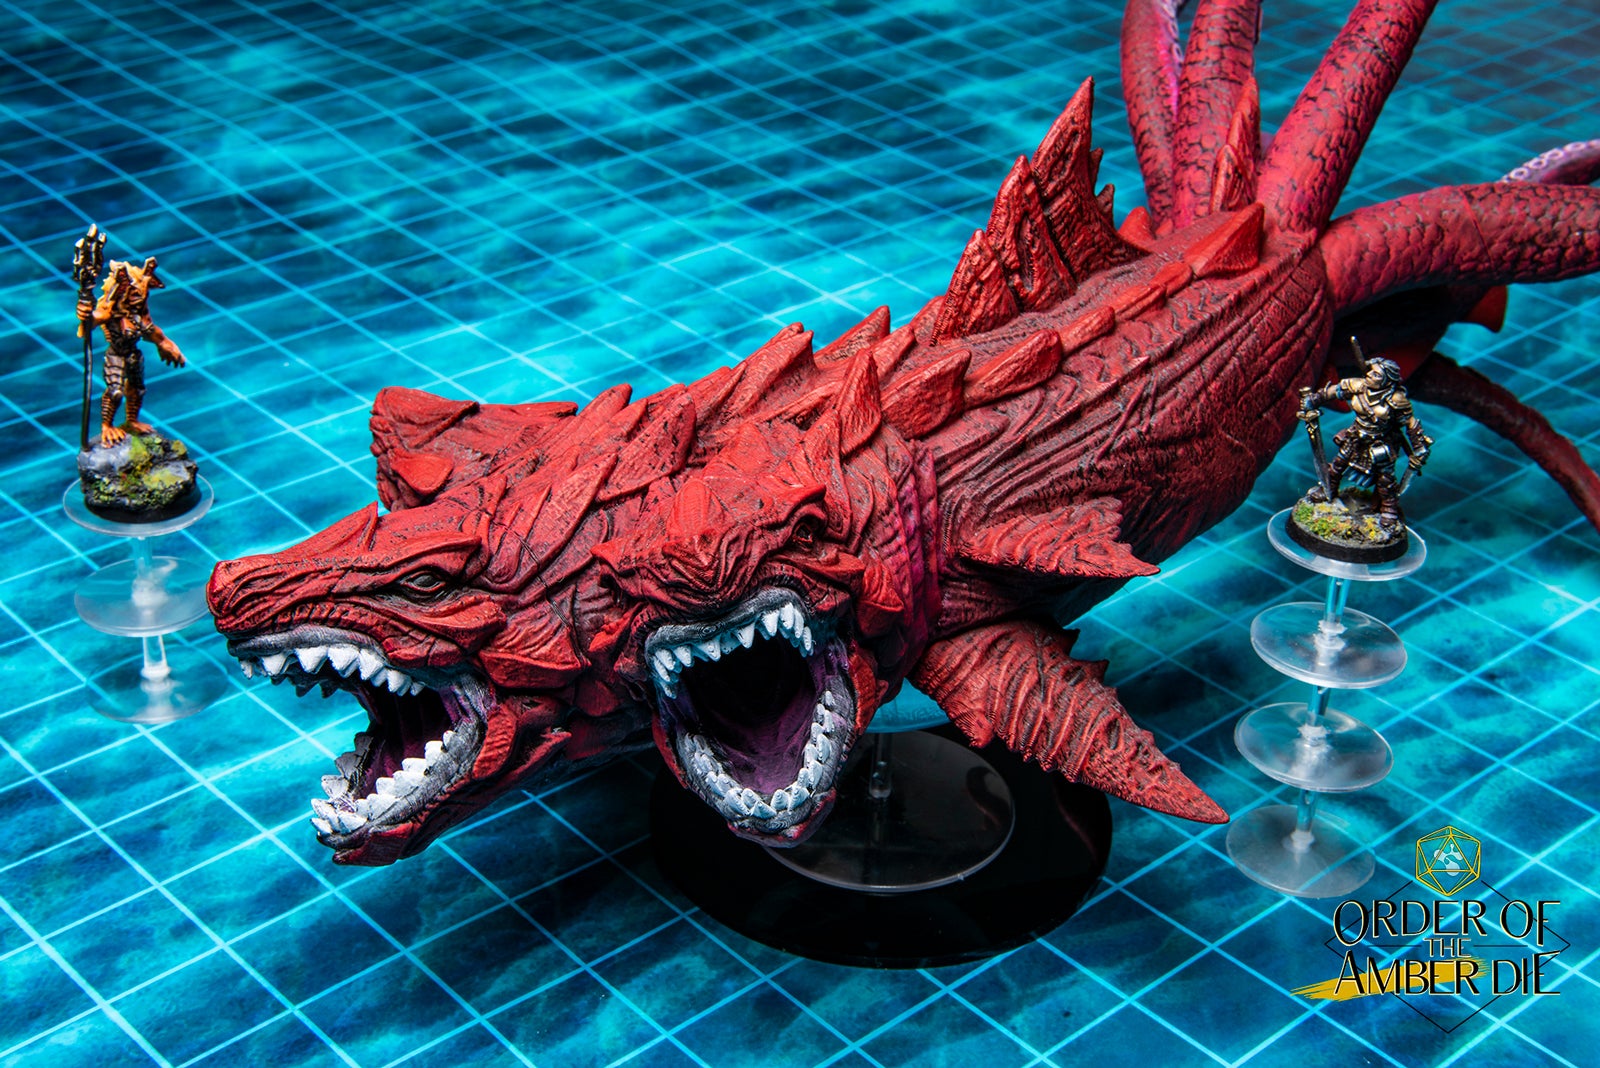 Custom monster model of a multiheaded red sharklike creature